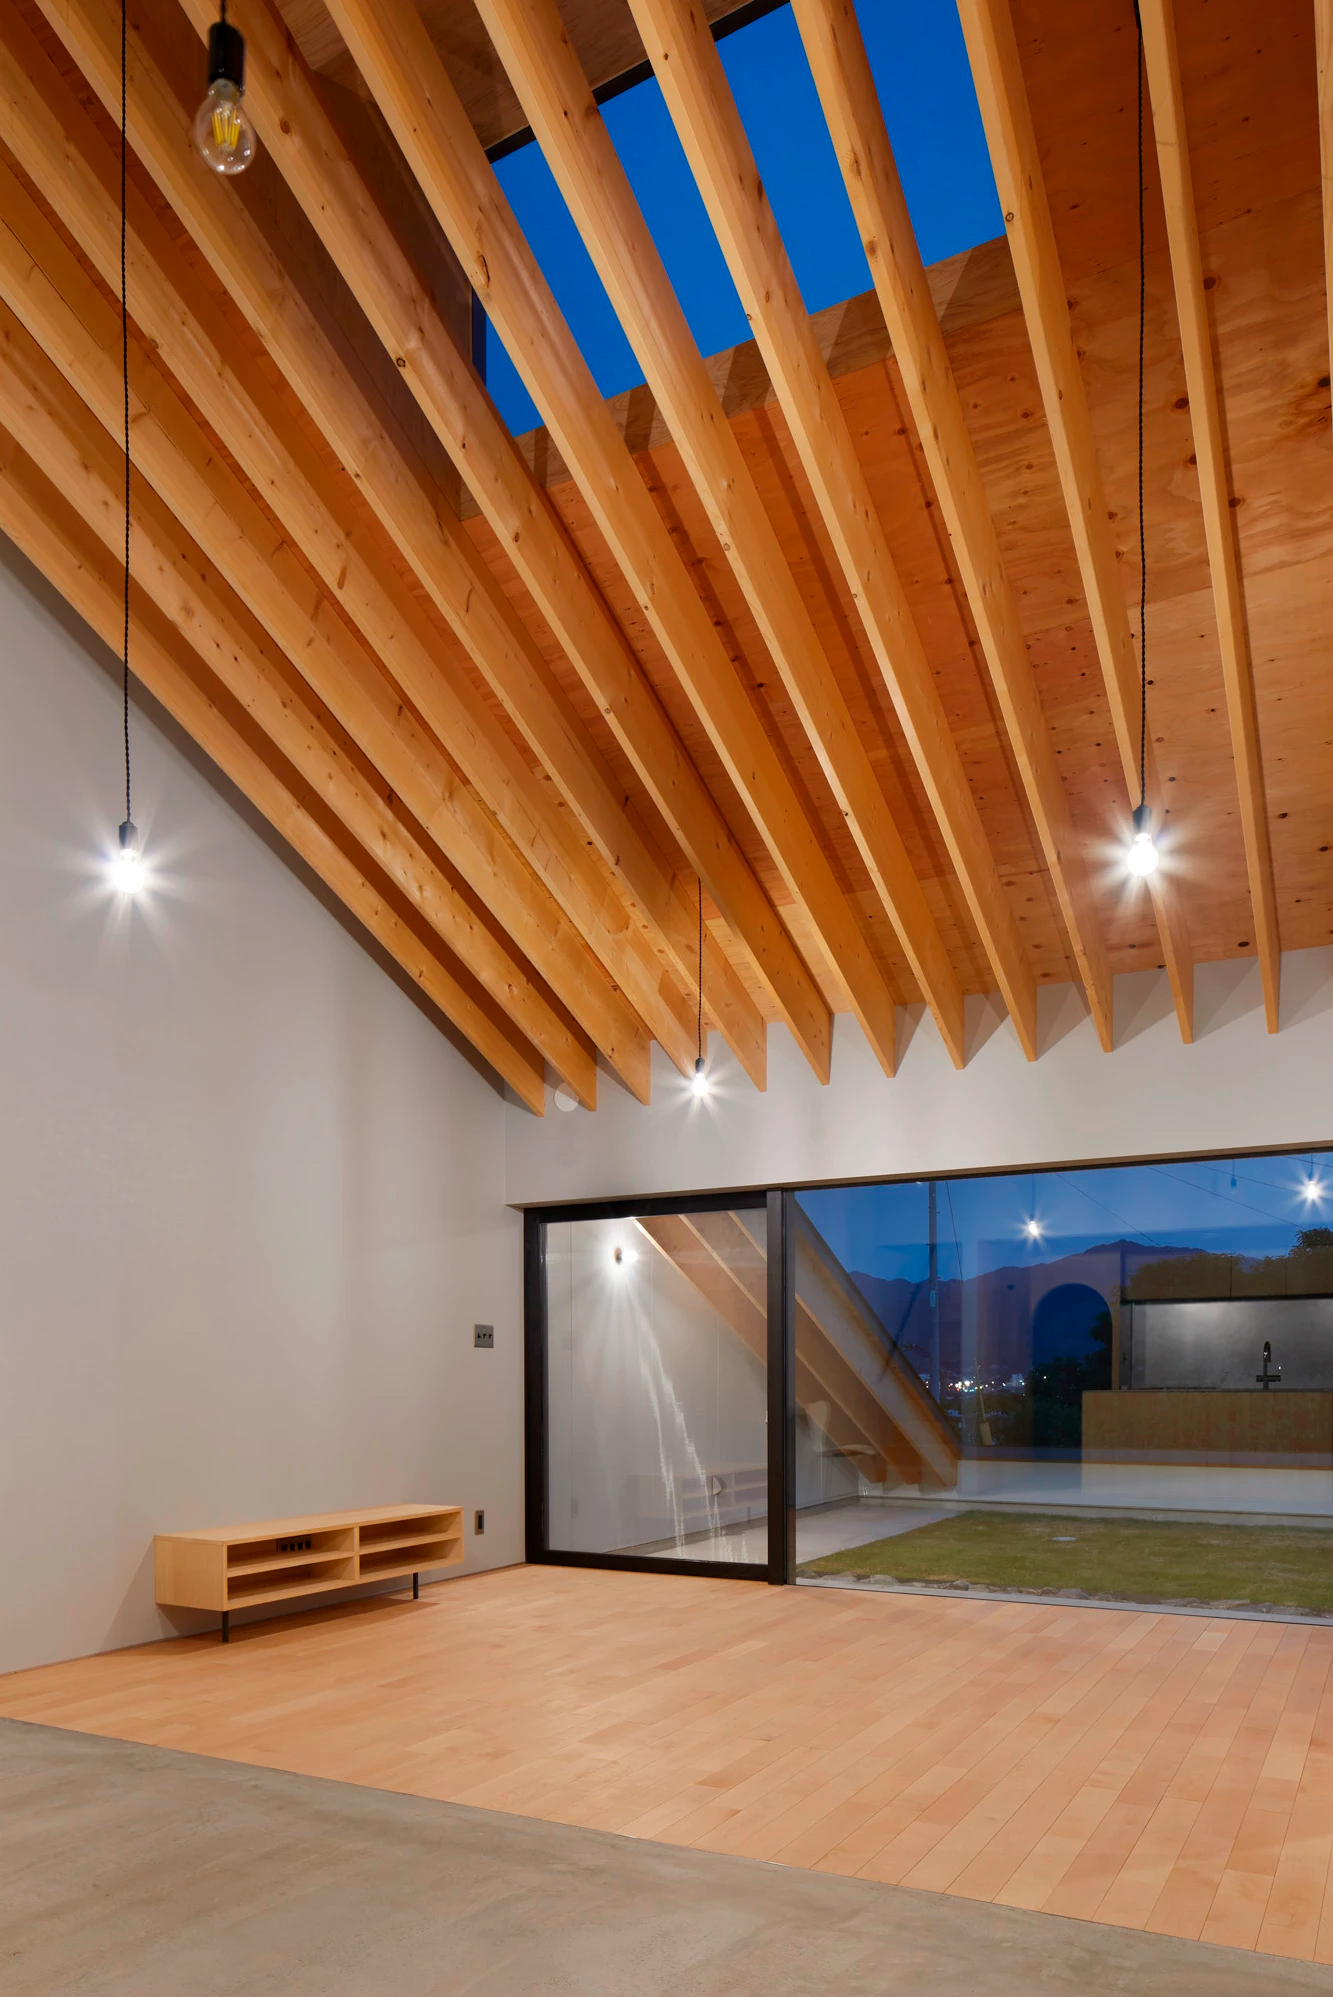 House by Kenta Eto Architects in Usuki, Japan